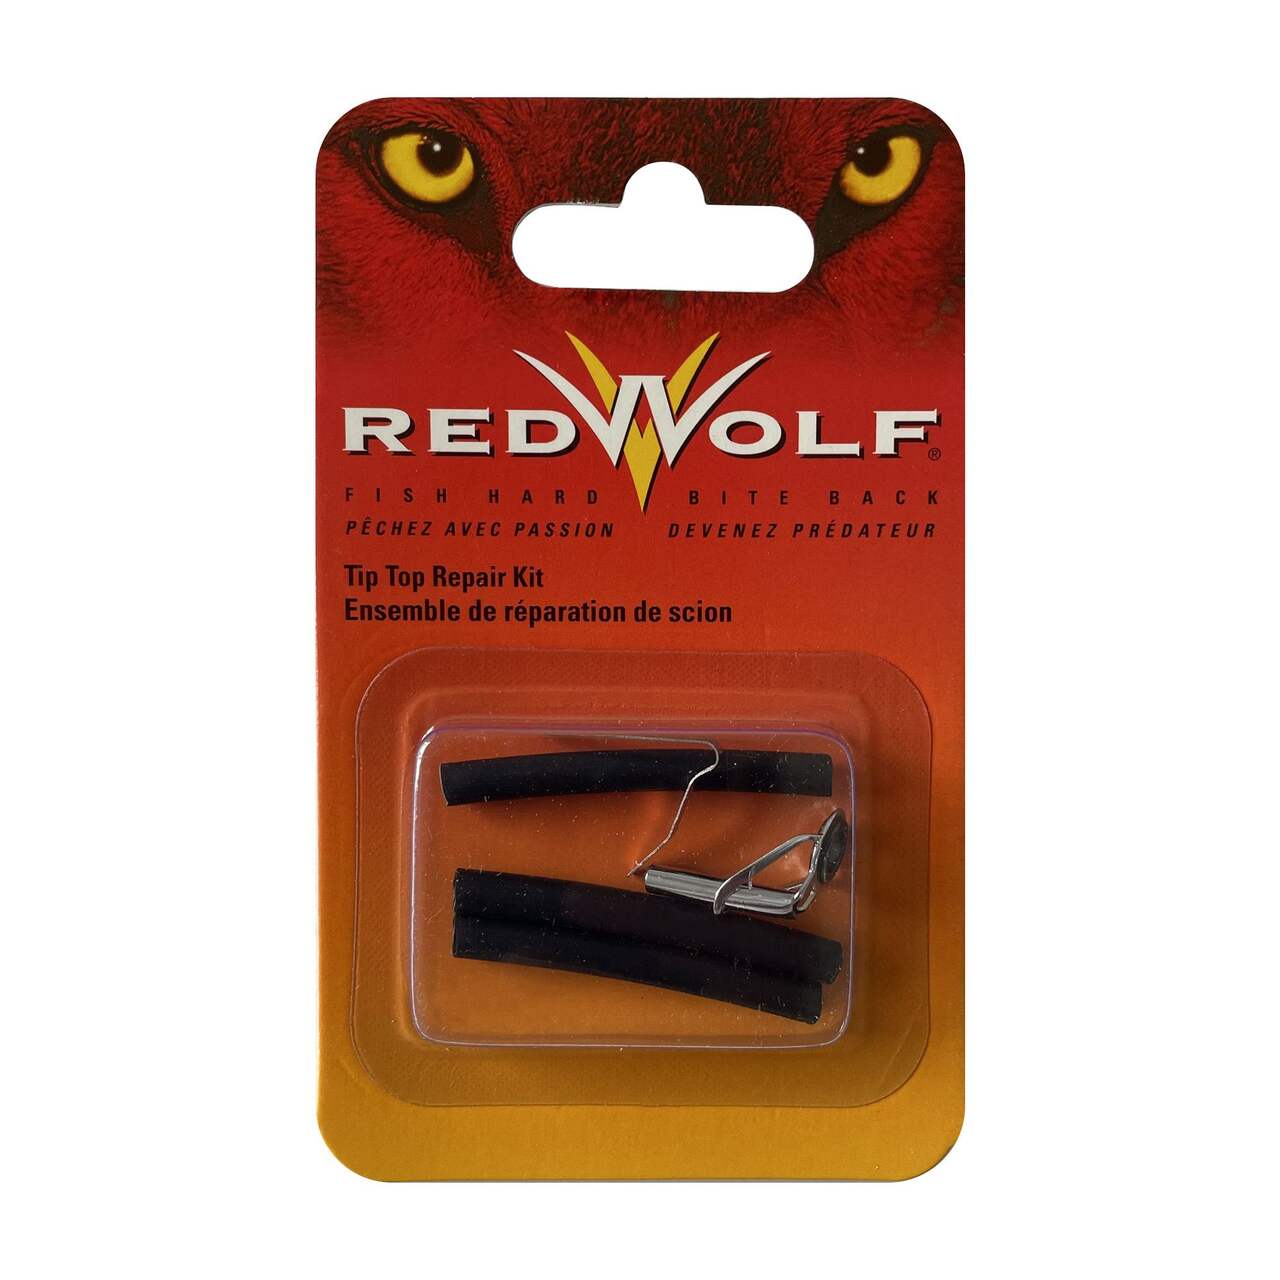 Red Wolf Tip Top Repair Kit